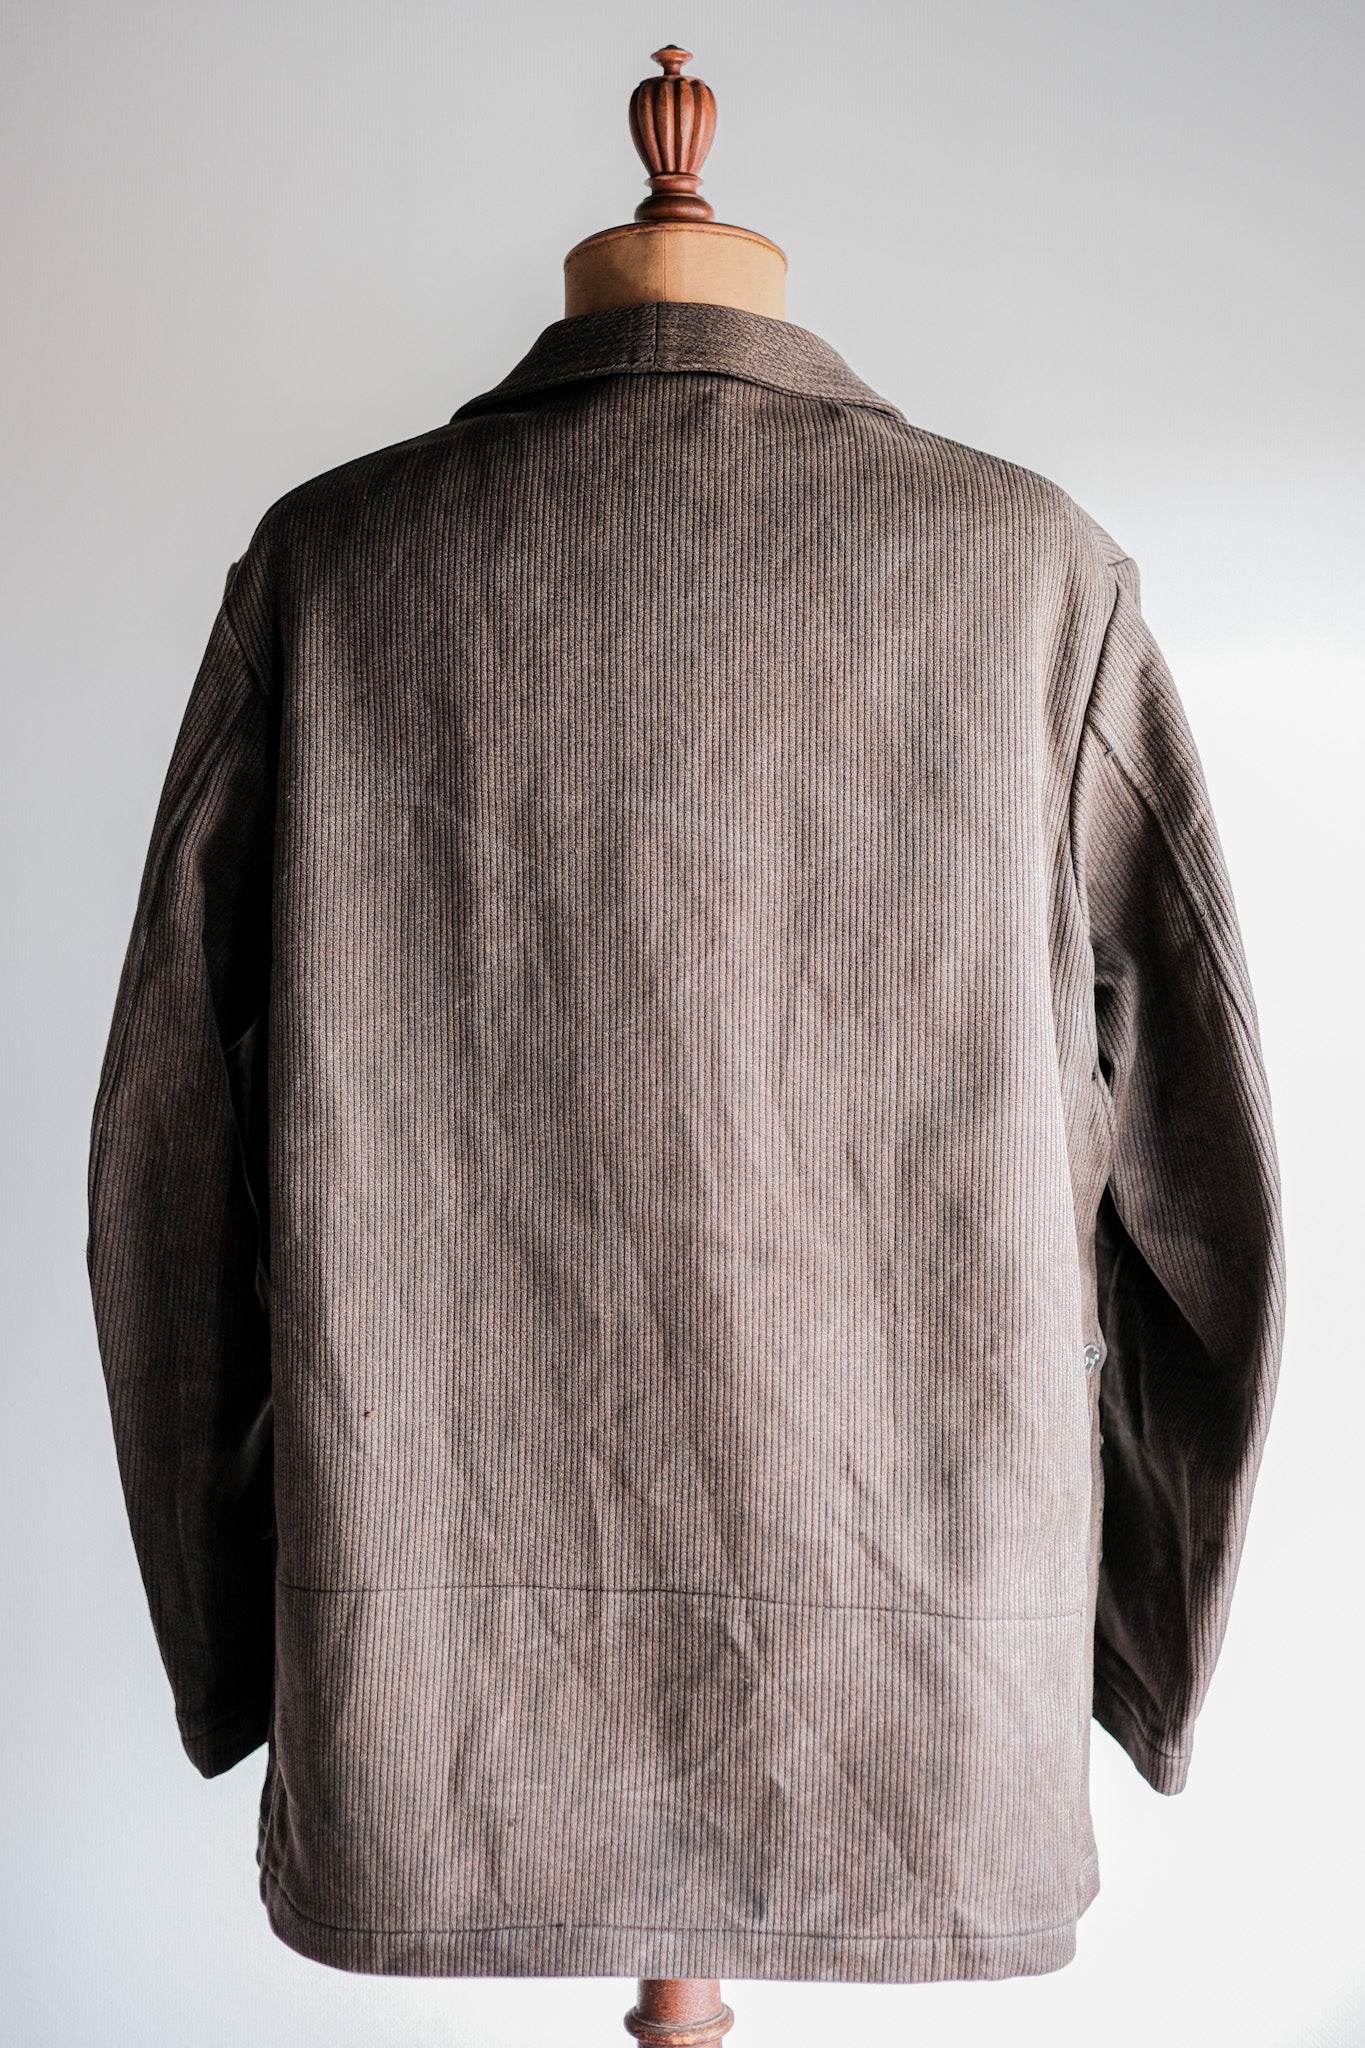 [~ 50 년대] 프랑스 빈티지 갈색 소금 및 후추 면화 피크 사냥 재킷